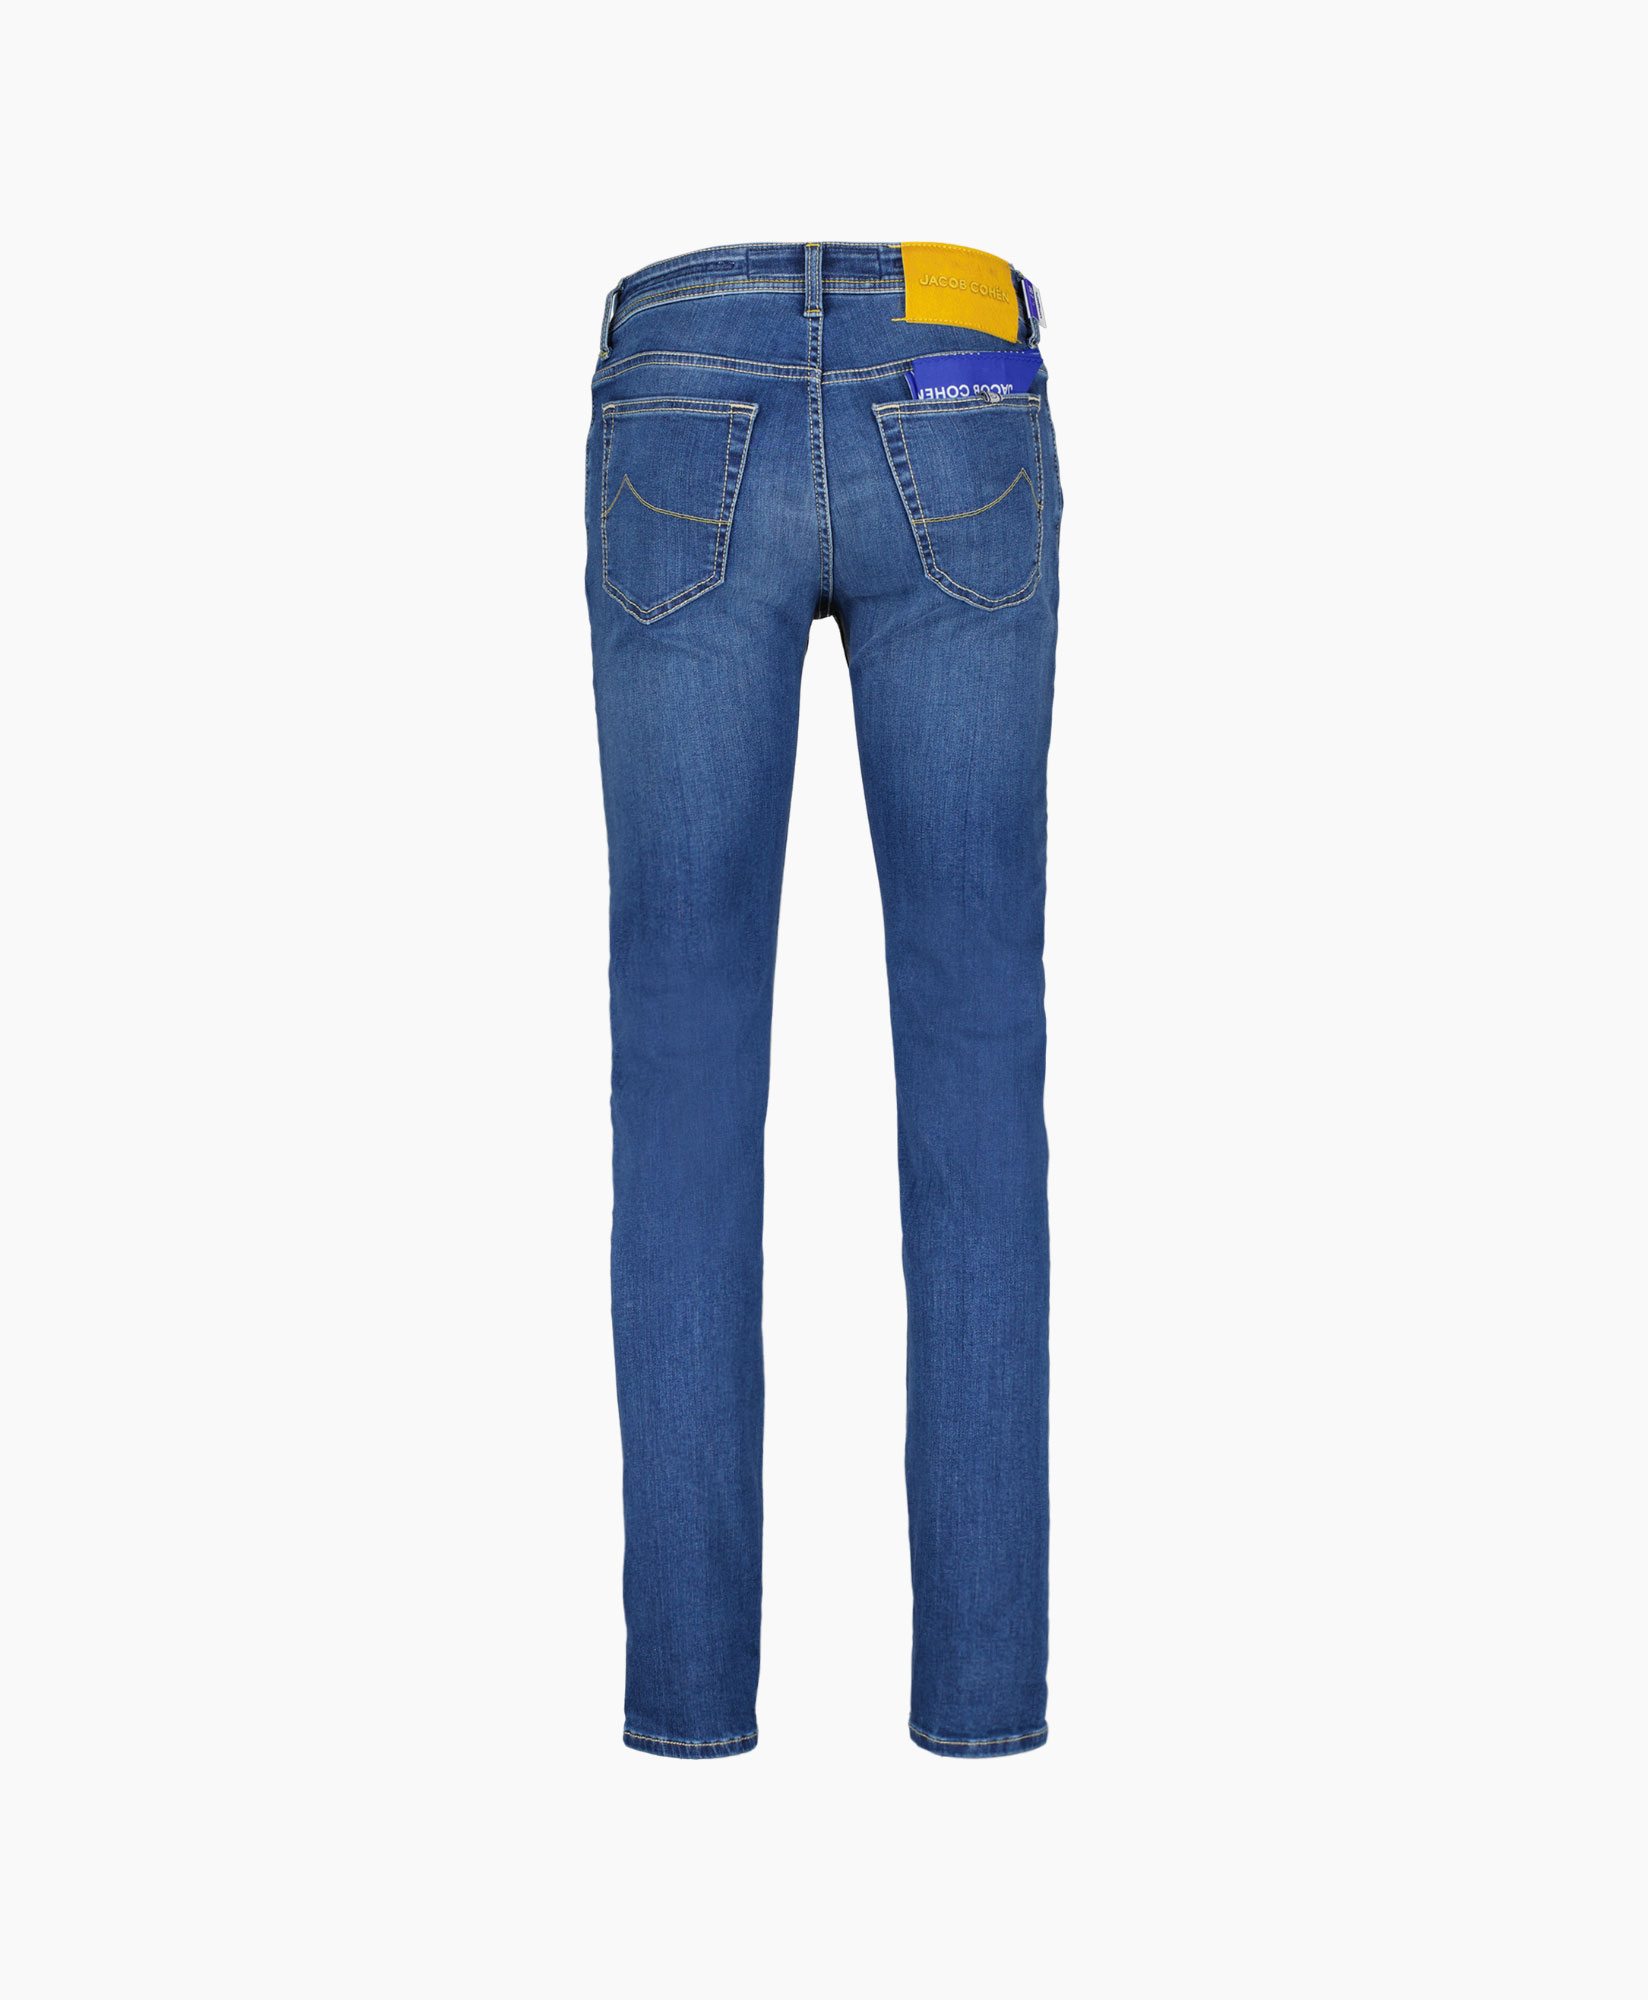 Jacob Cohen Jeans Pant 5 Pkt Slim Fit Bard Blauw